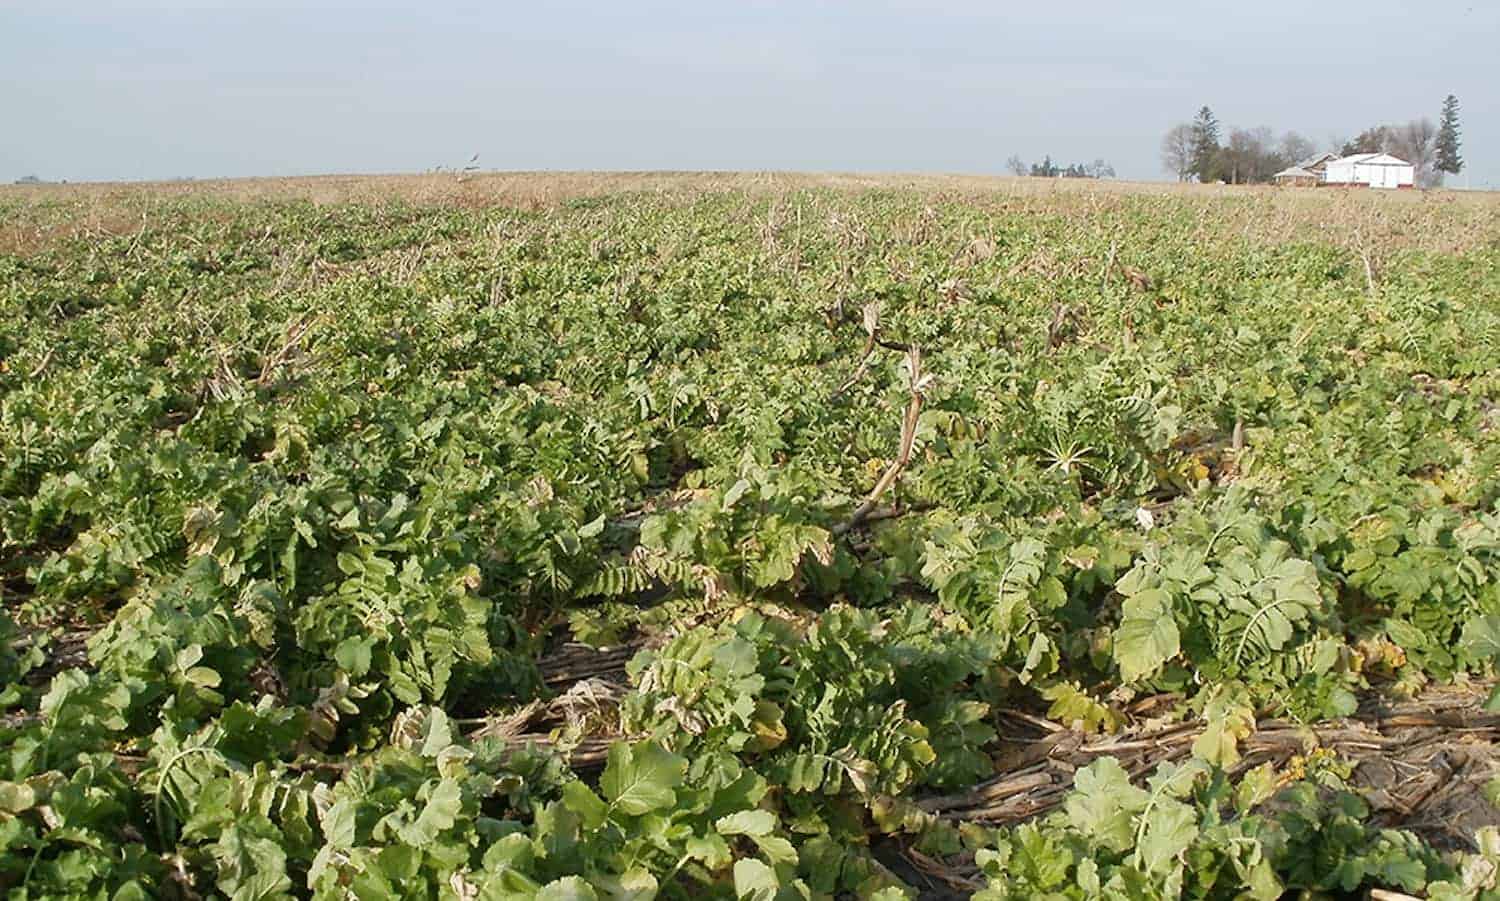 中西部的可持续发展的组织再次开始使用覆盖作物 - 这对全国的土壤和水健康意味着什么？